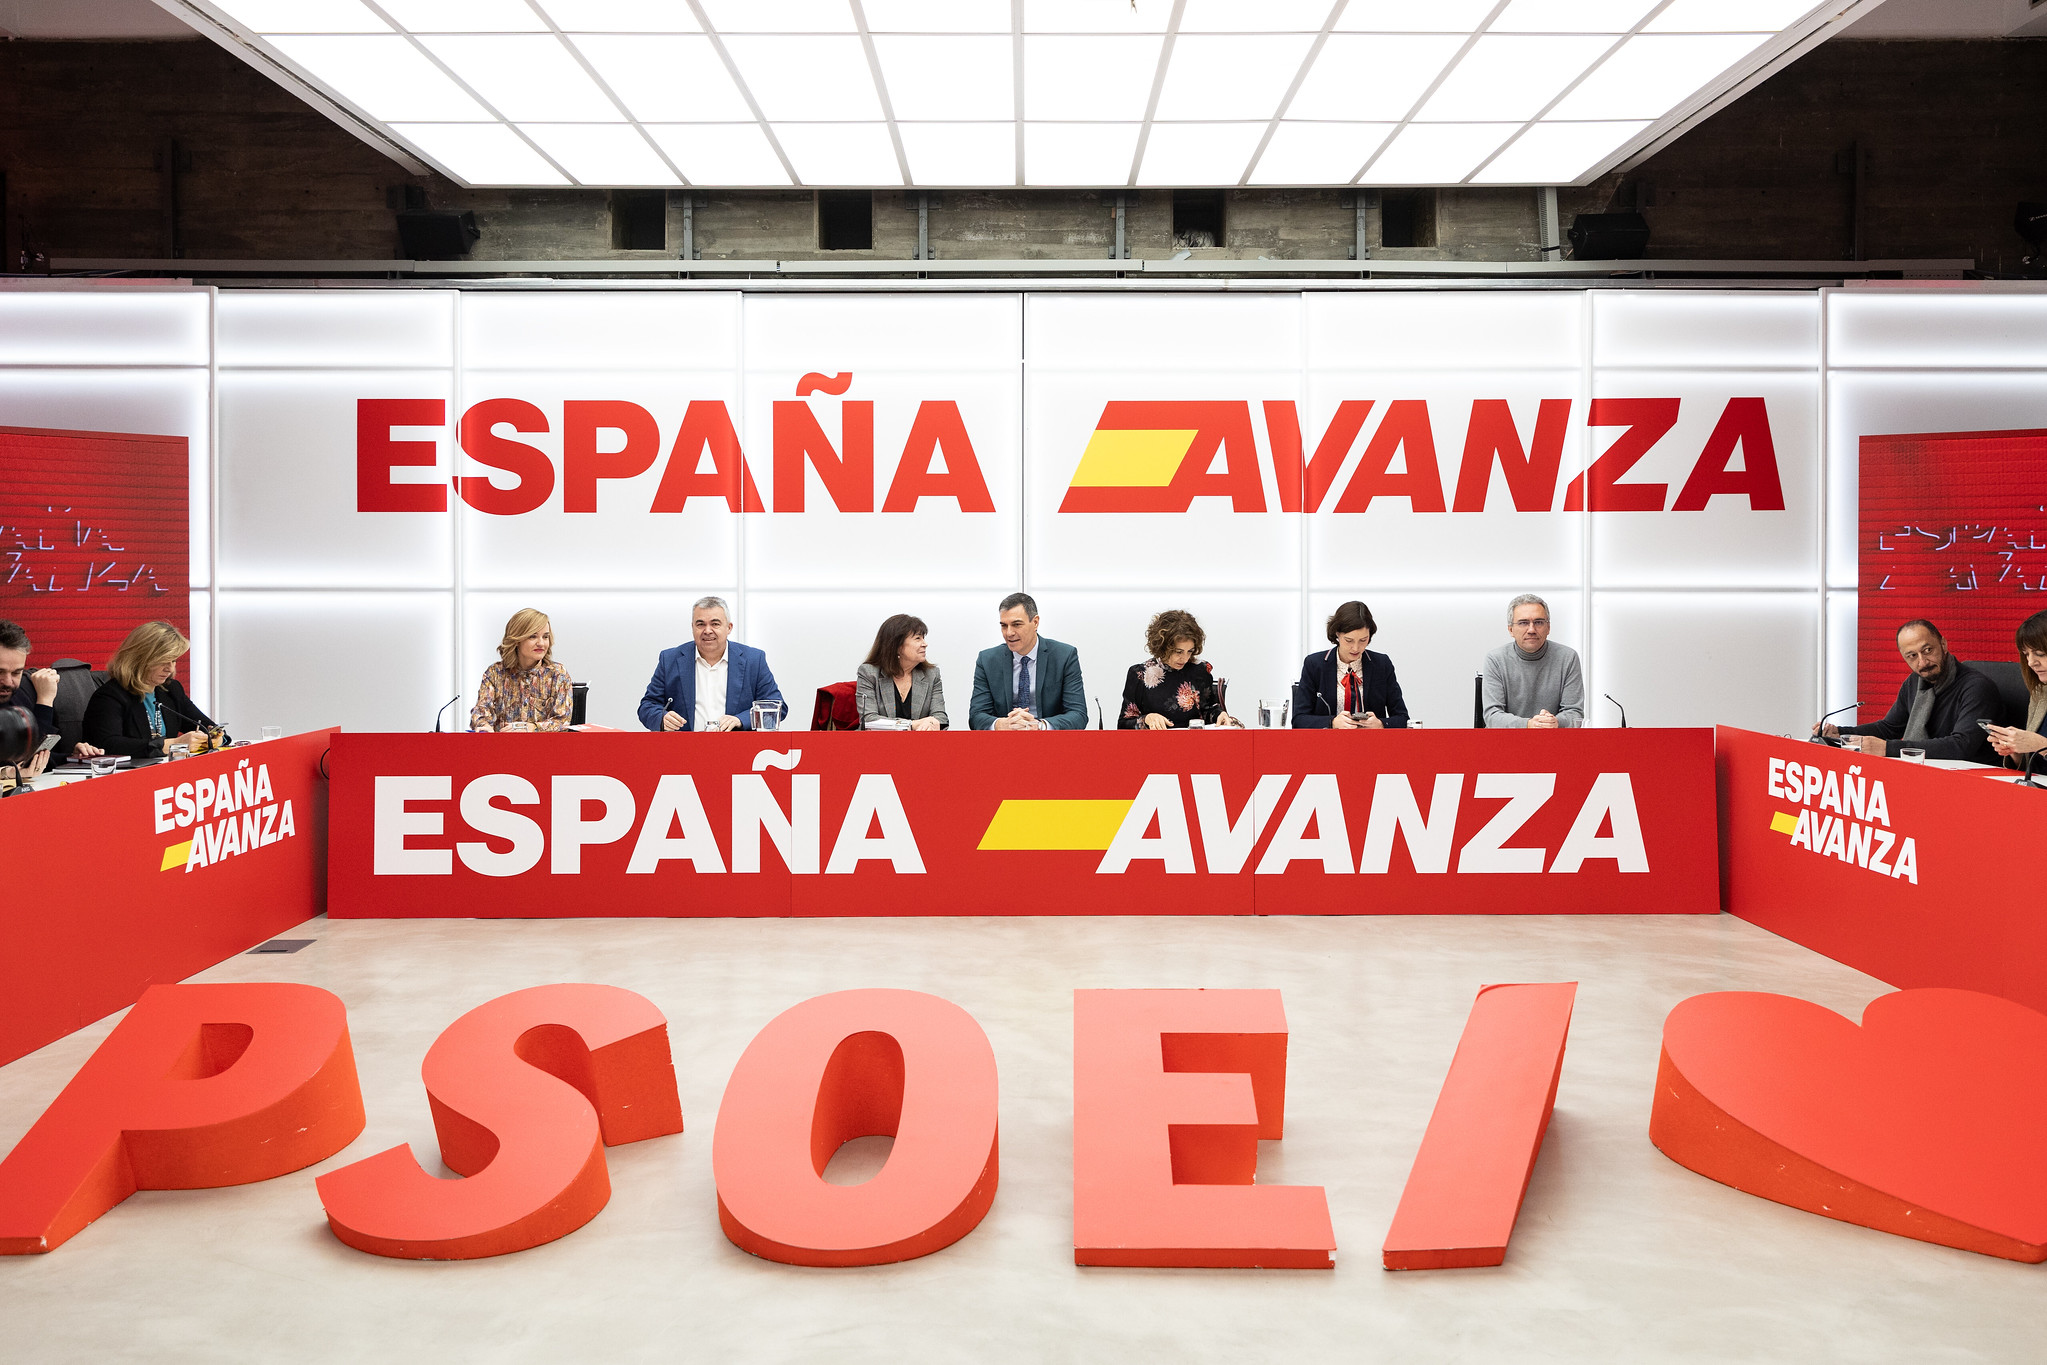 "Los votantes del PSOE", peor que la extrema derecha, son el "peligro real para la democracia"